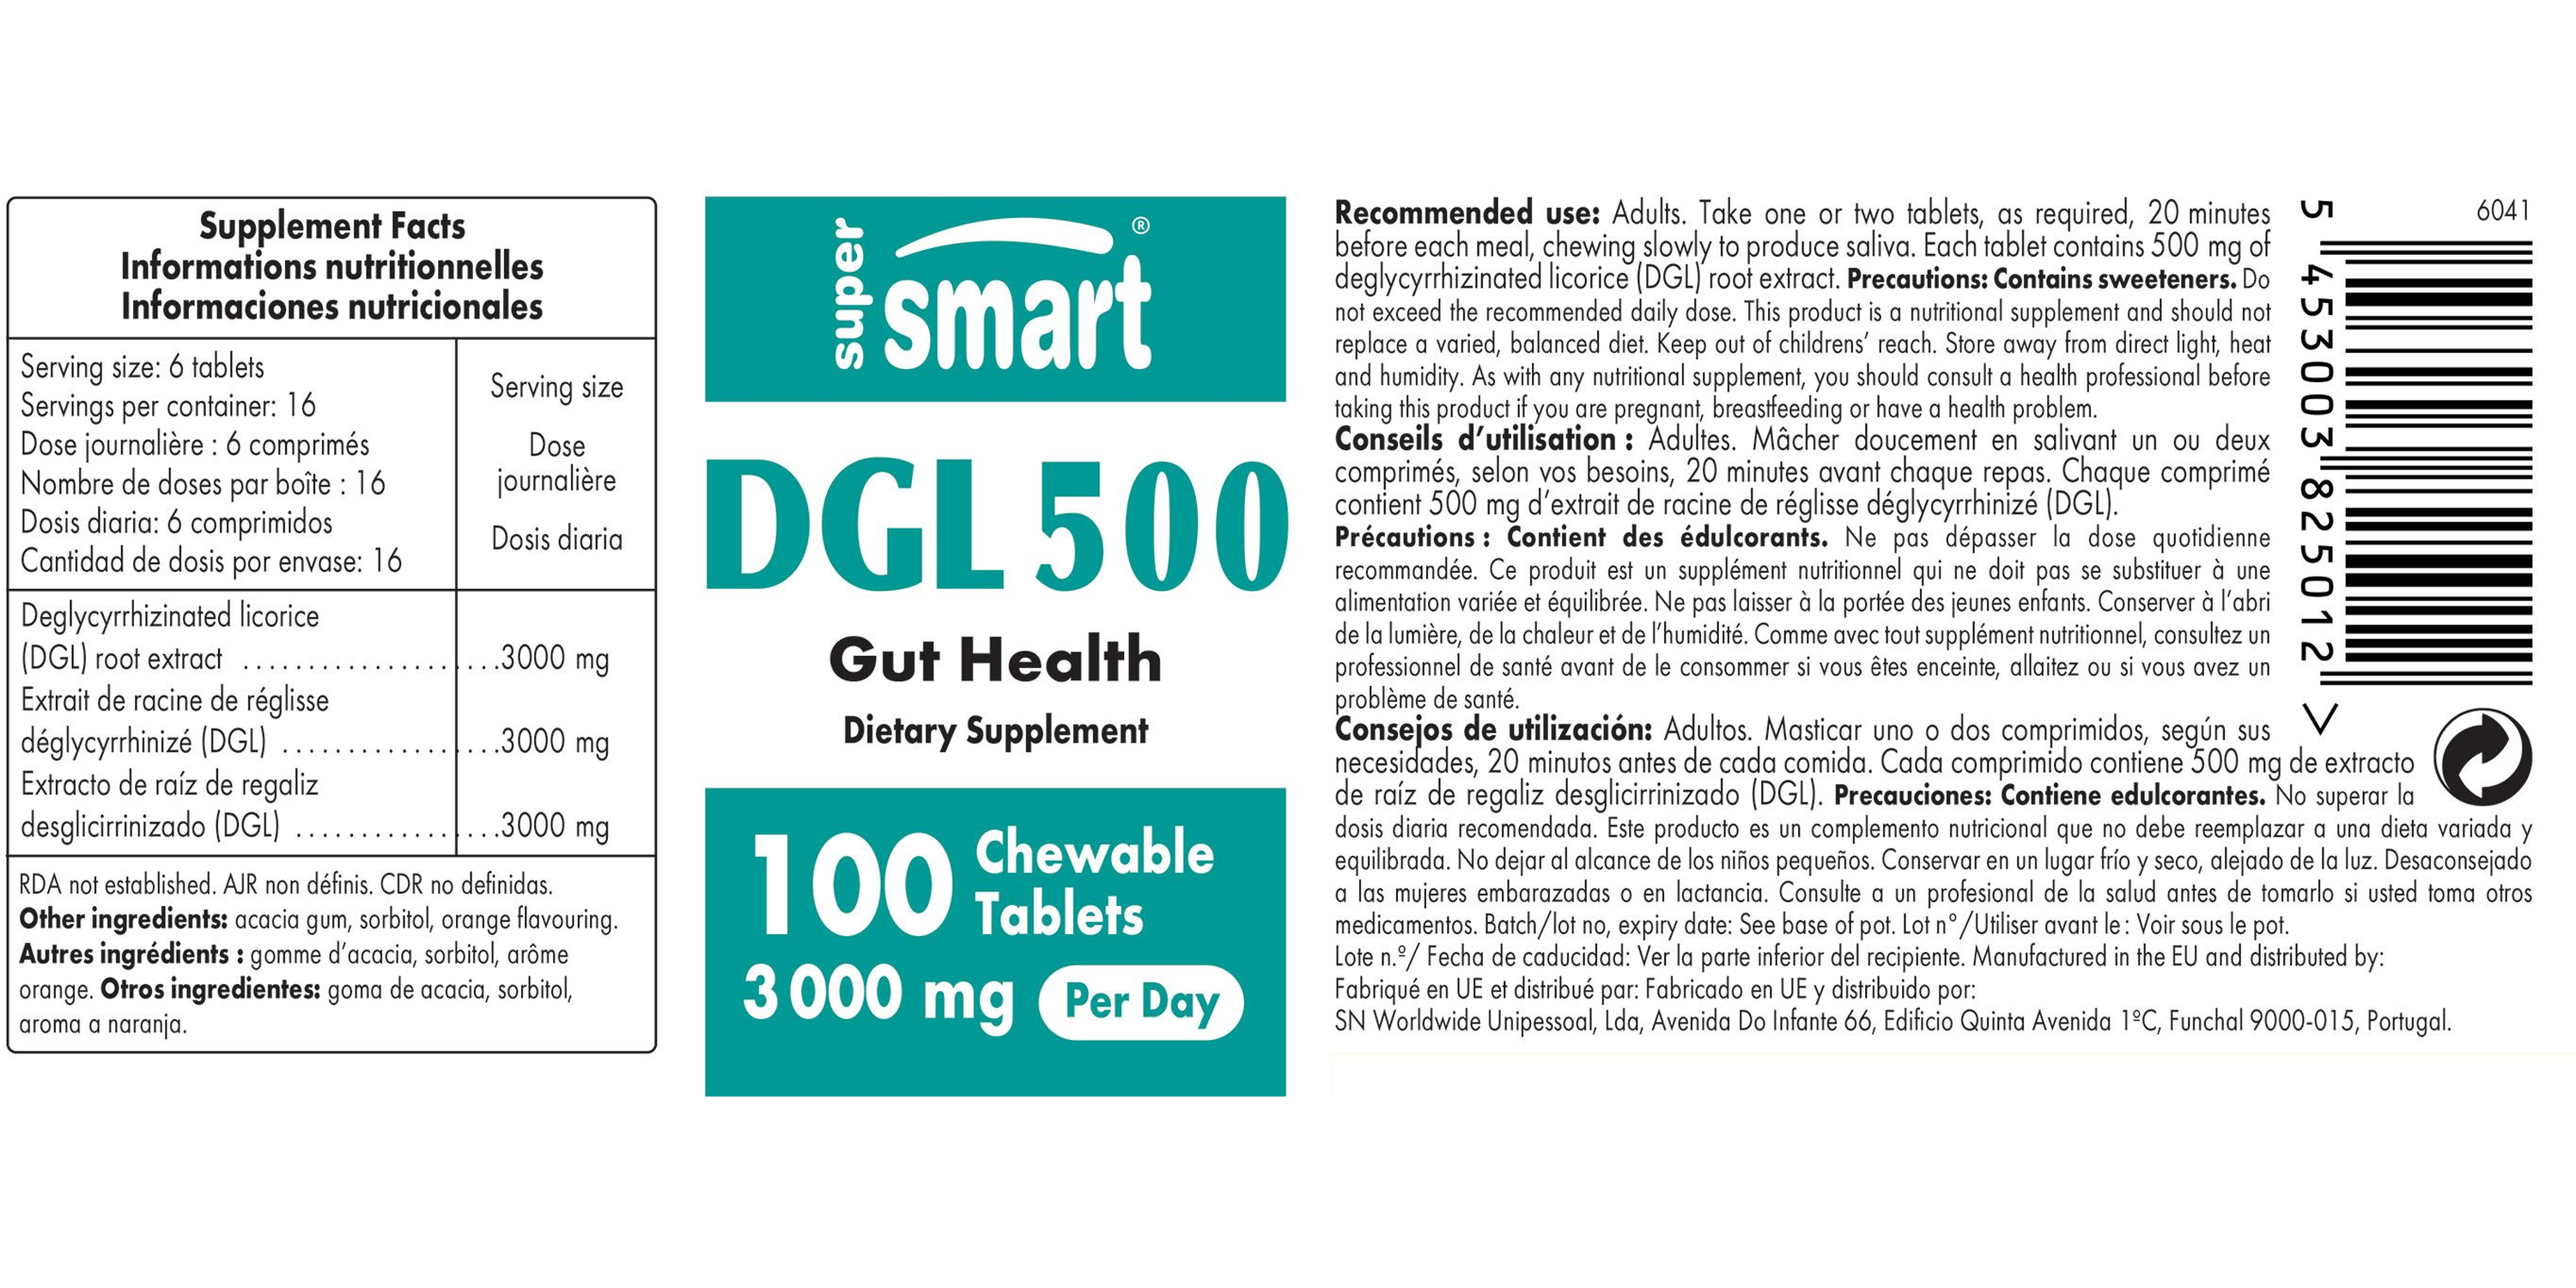 DGL 500 Supplement